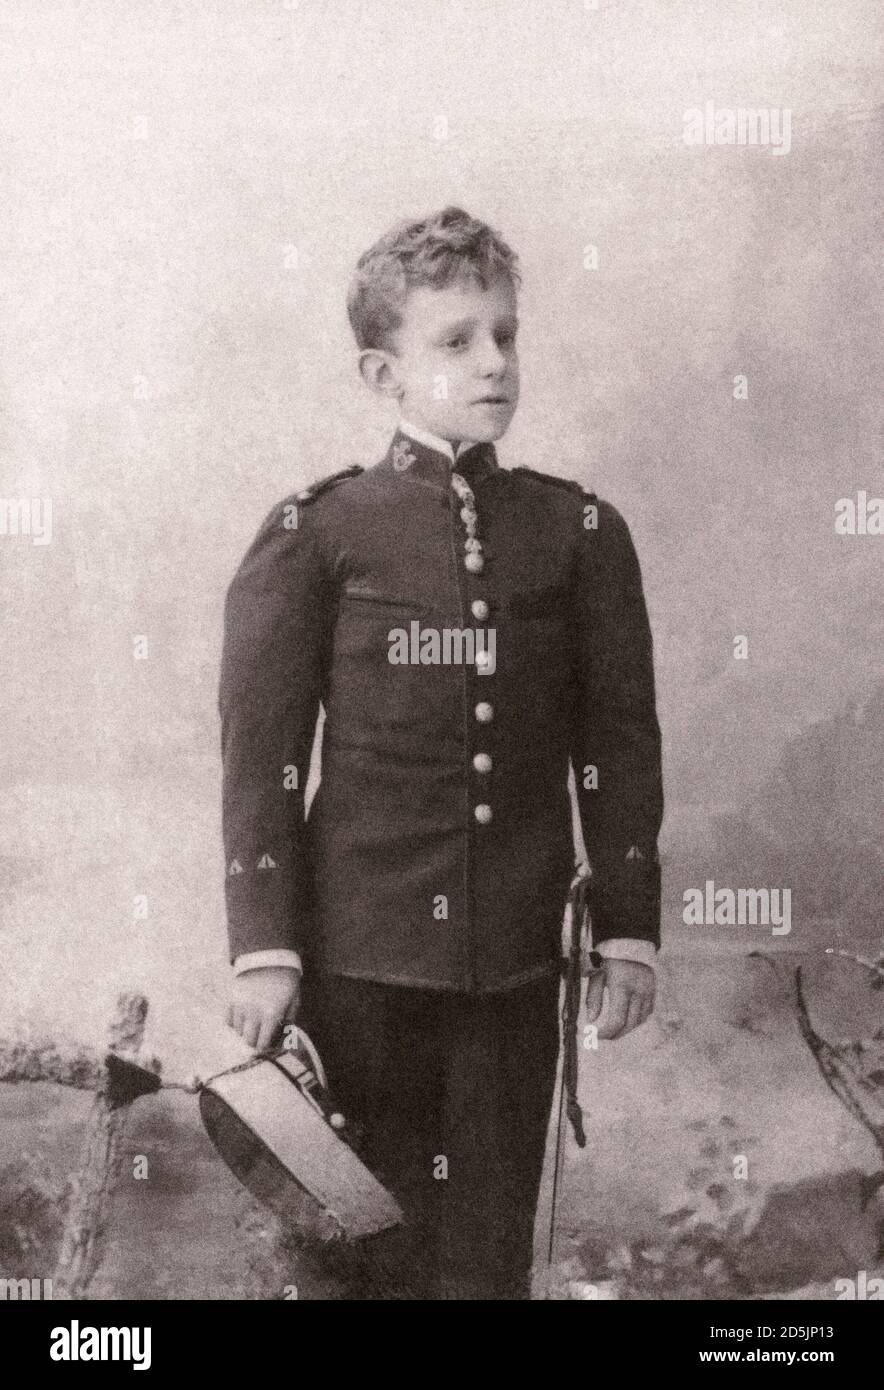 Retor foto del giovane Alphonse XIII di Spagna. Alfonso XIII (1886 – 1941), conosciuto anche come El Africano o l'Africano, fu Re di Spagna dal 1886 fino al 1900 Foto Stock